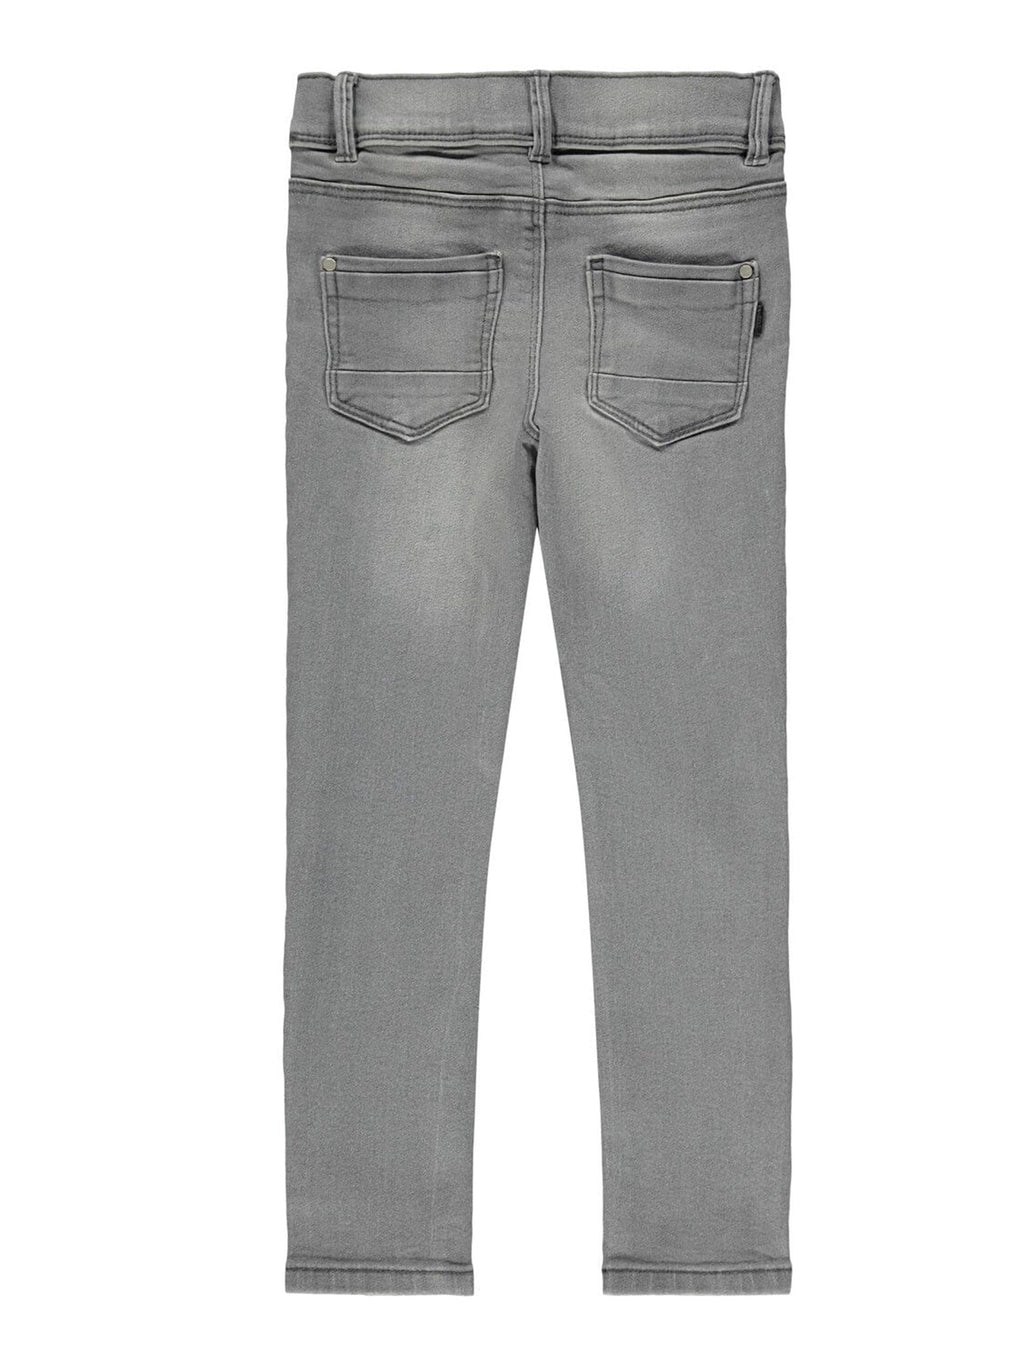 Jeans in forma magra in cotone organico - denim grigio